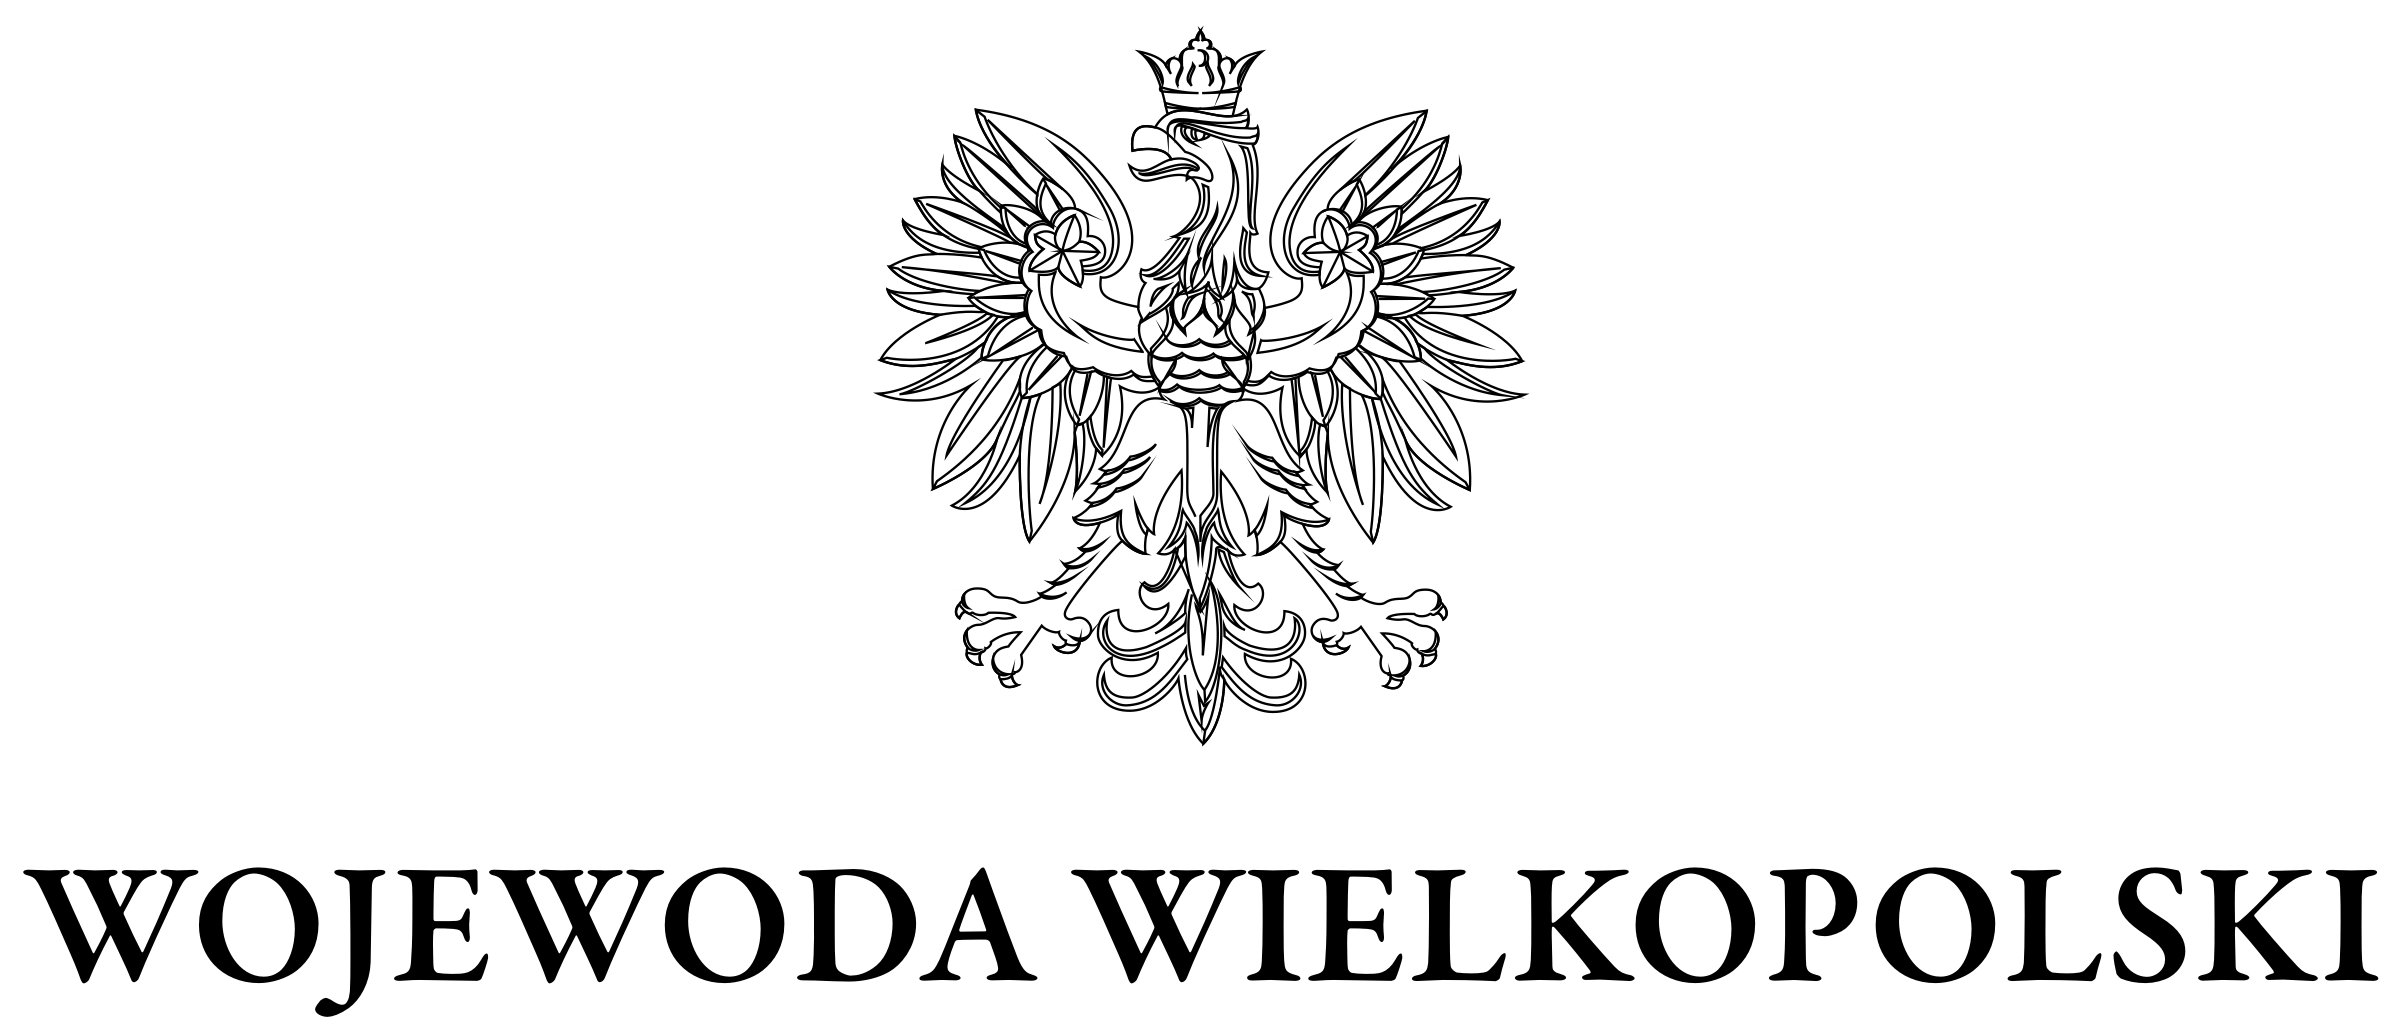 Wojewoda Wielkopolski 300dpi